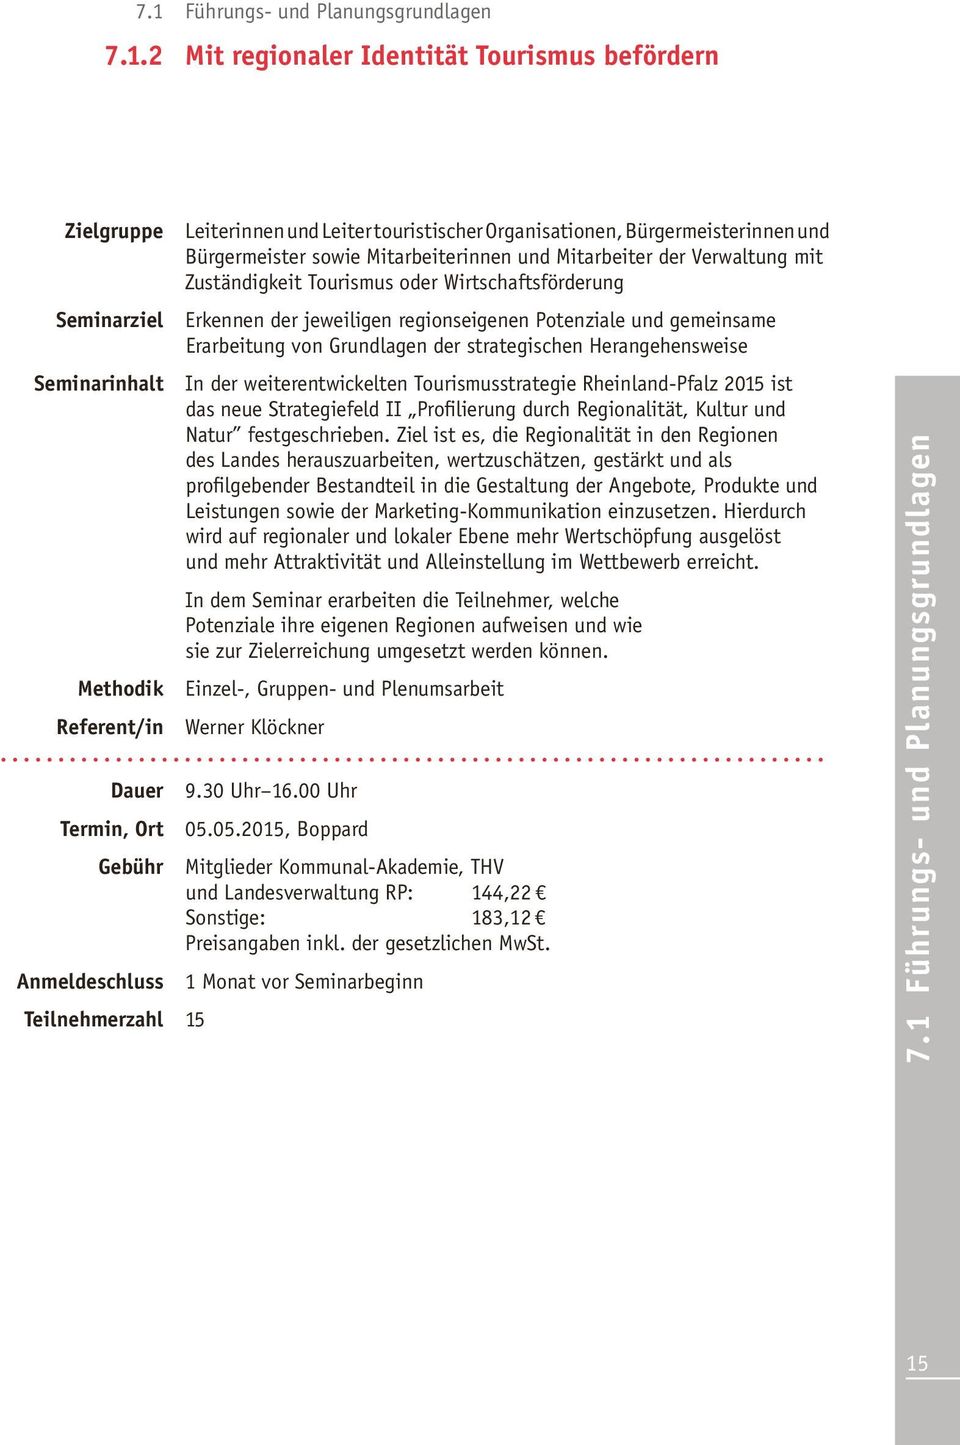 Potenziale und gemeinsame Erarbeitung von Grundlagen der strategischen Herangehensweise In der weiterentwickelten Tourismusstrategie Rheinland-Pfalz 2015 ist das neue Strategiefeld II Profilierung